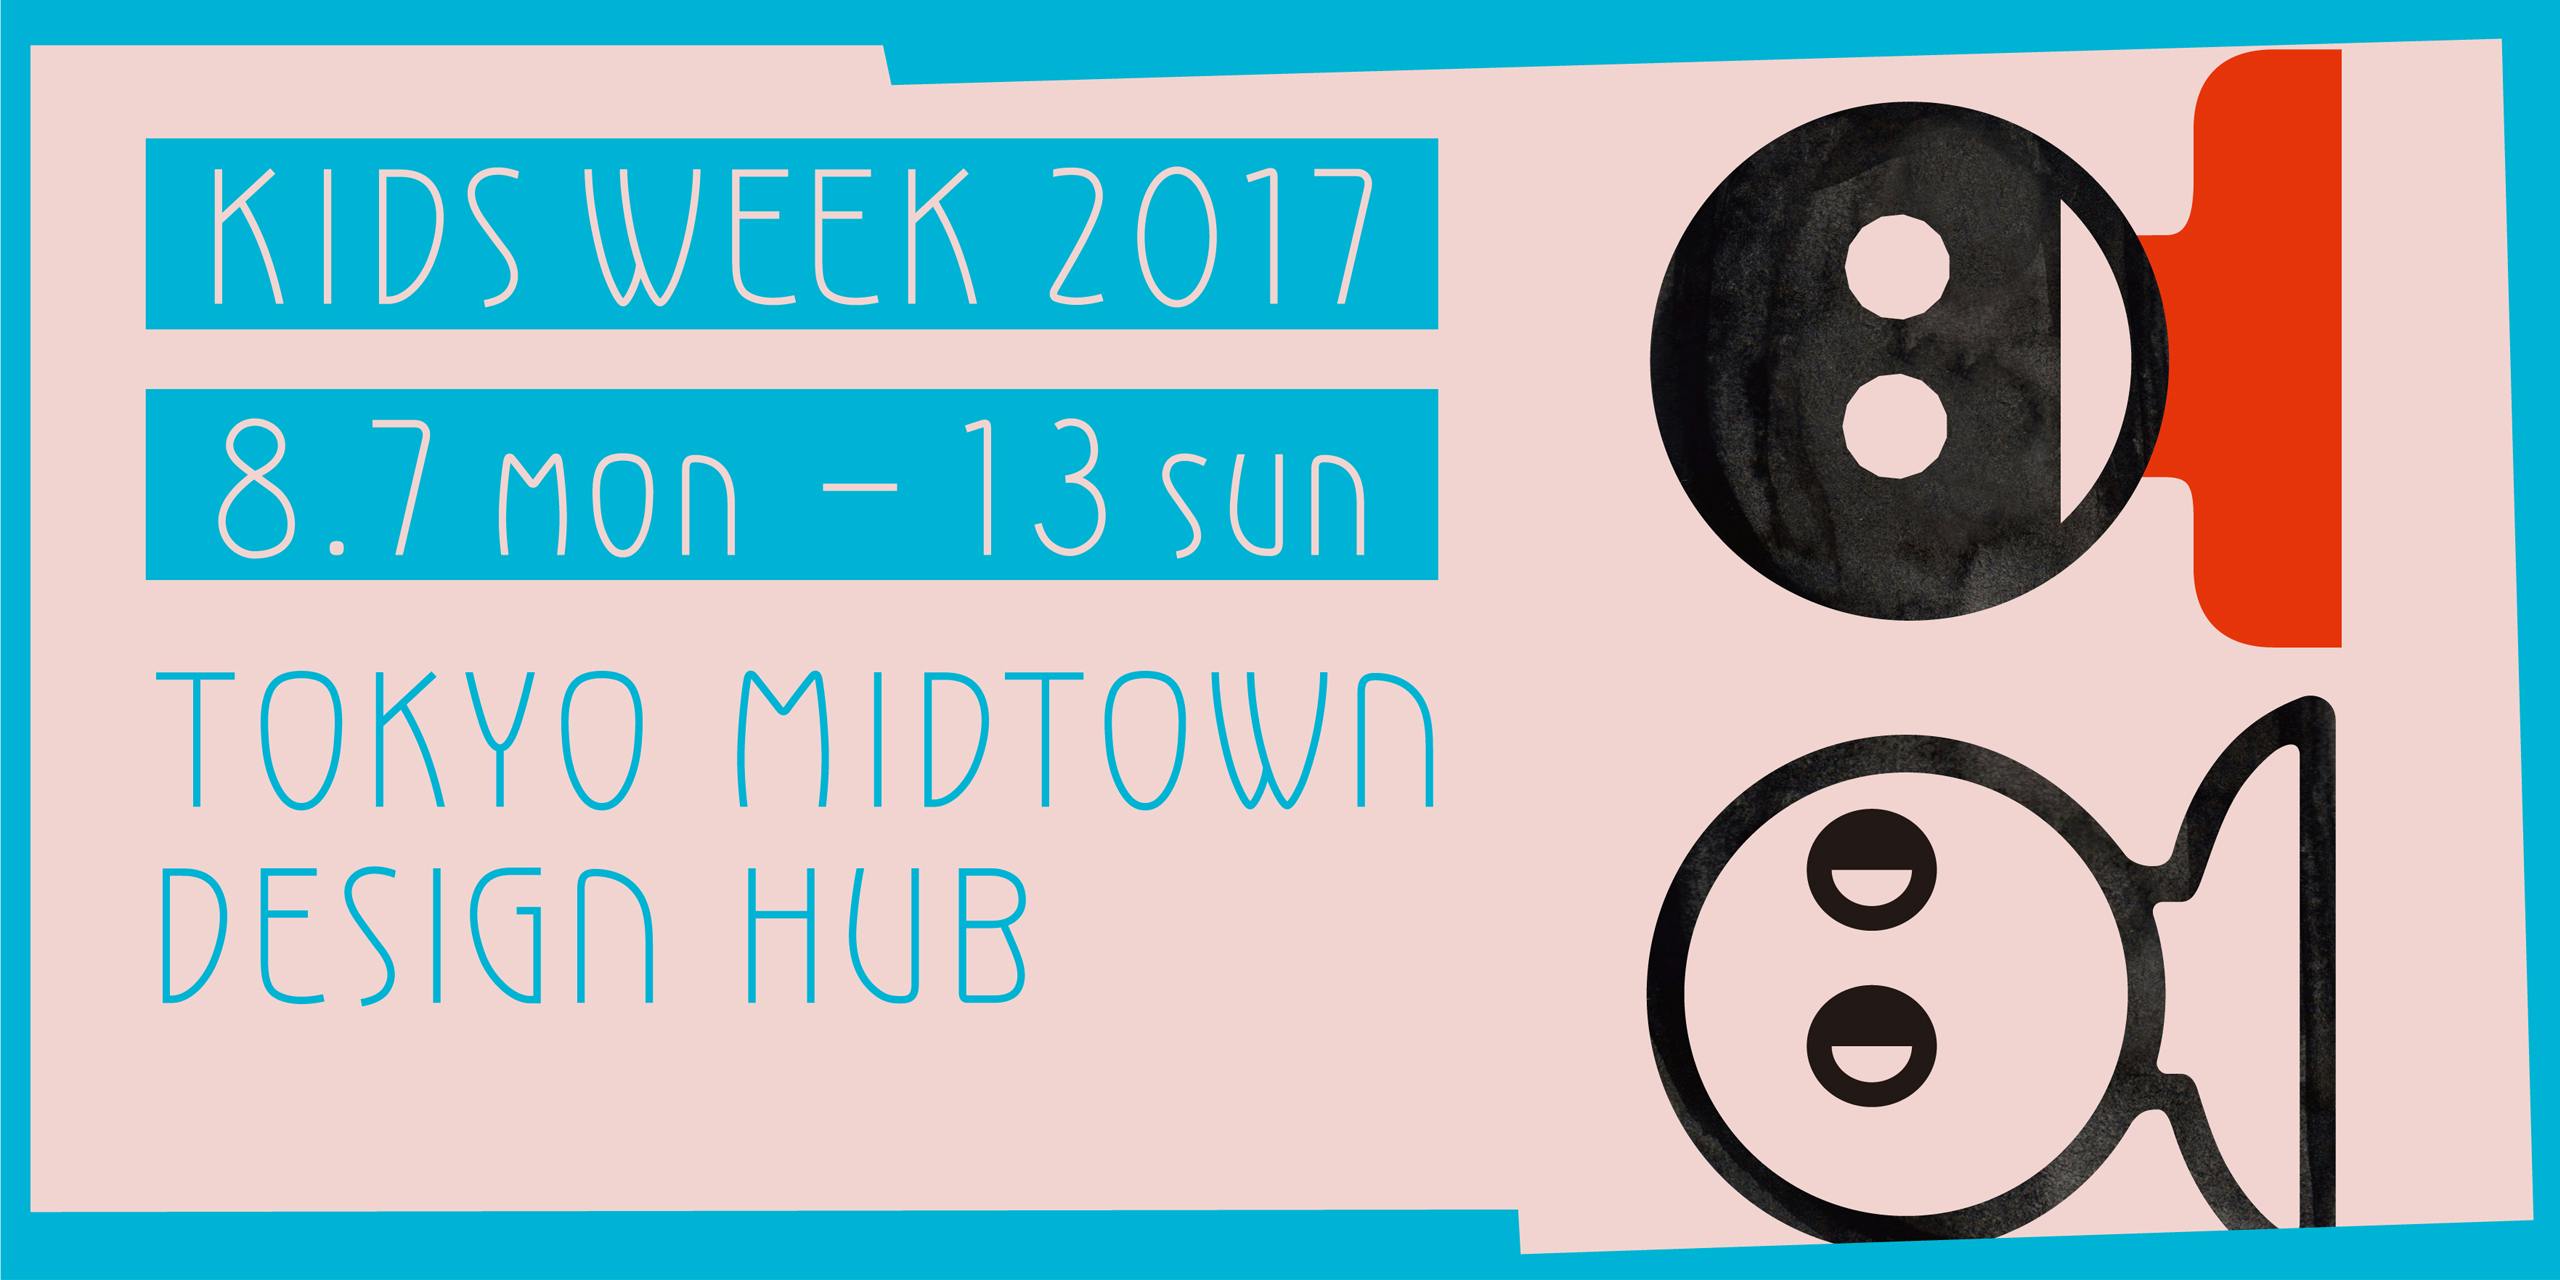 Tokyo Midtown Design Hub Kids Week 2017